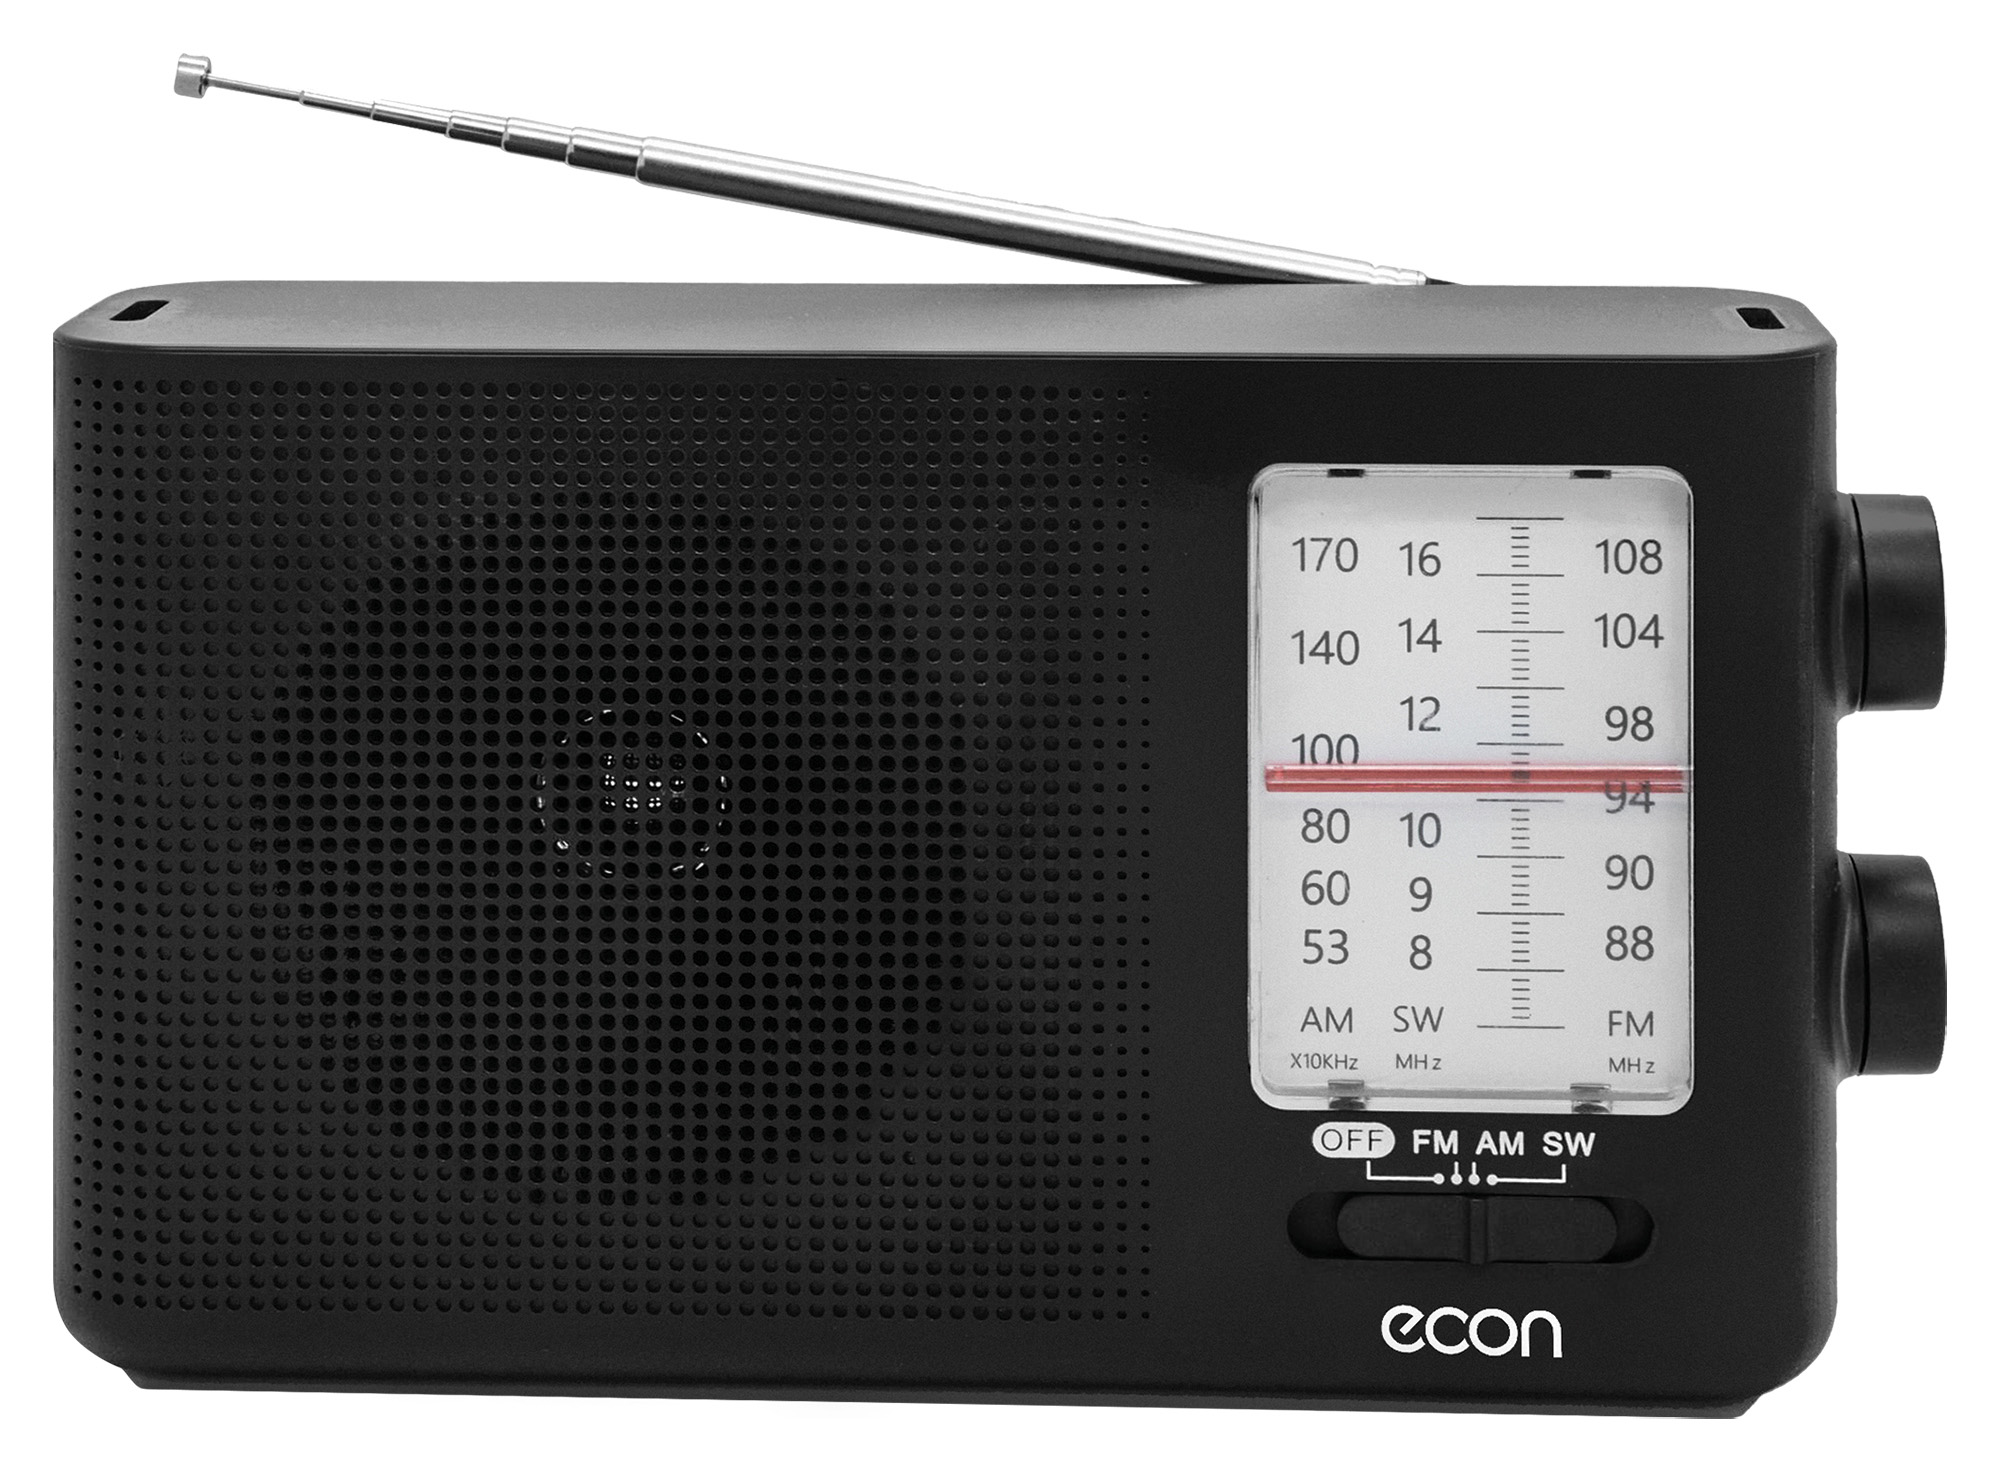 Картинка Радиоприемник ECON ERP-1400 по разумной цене купить в интернет магазине mall.su